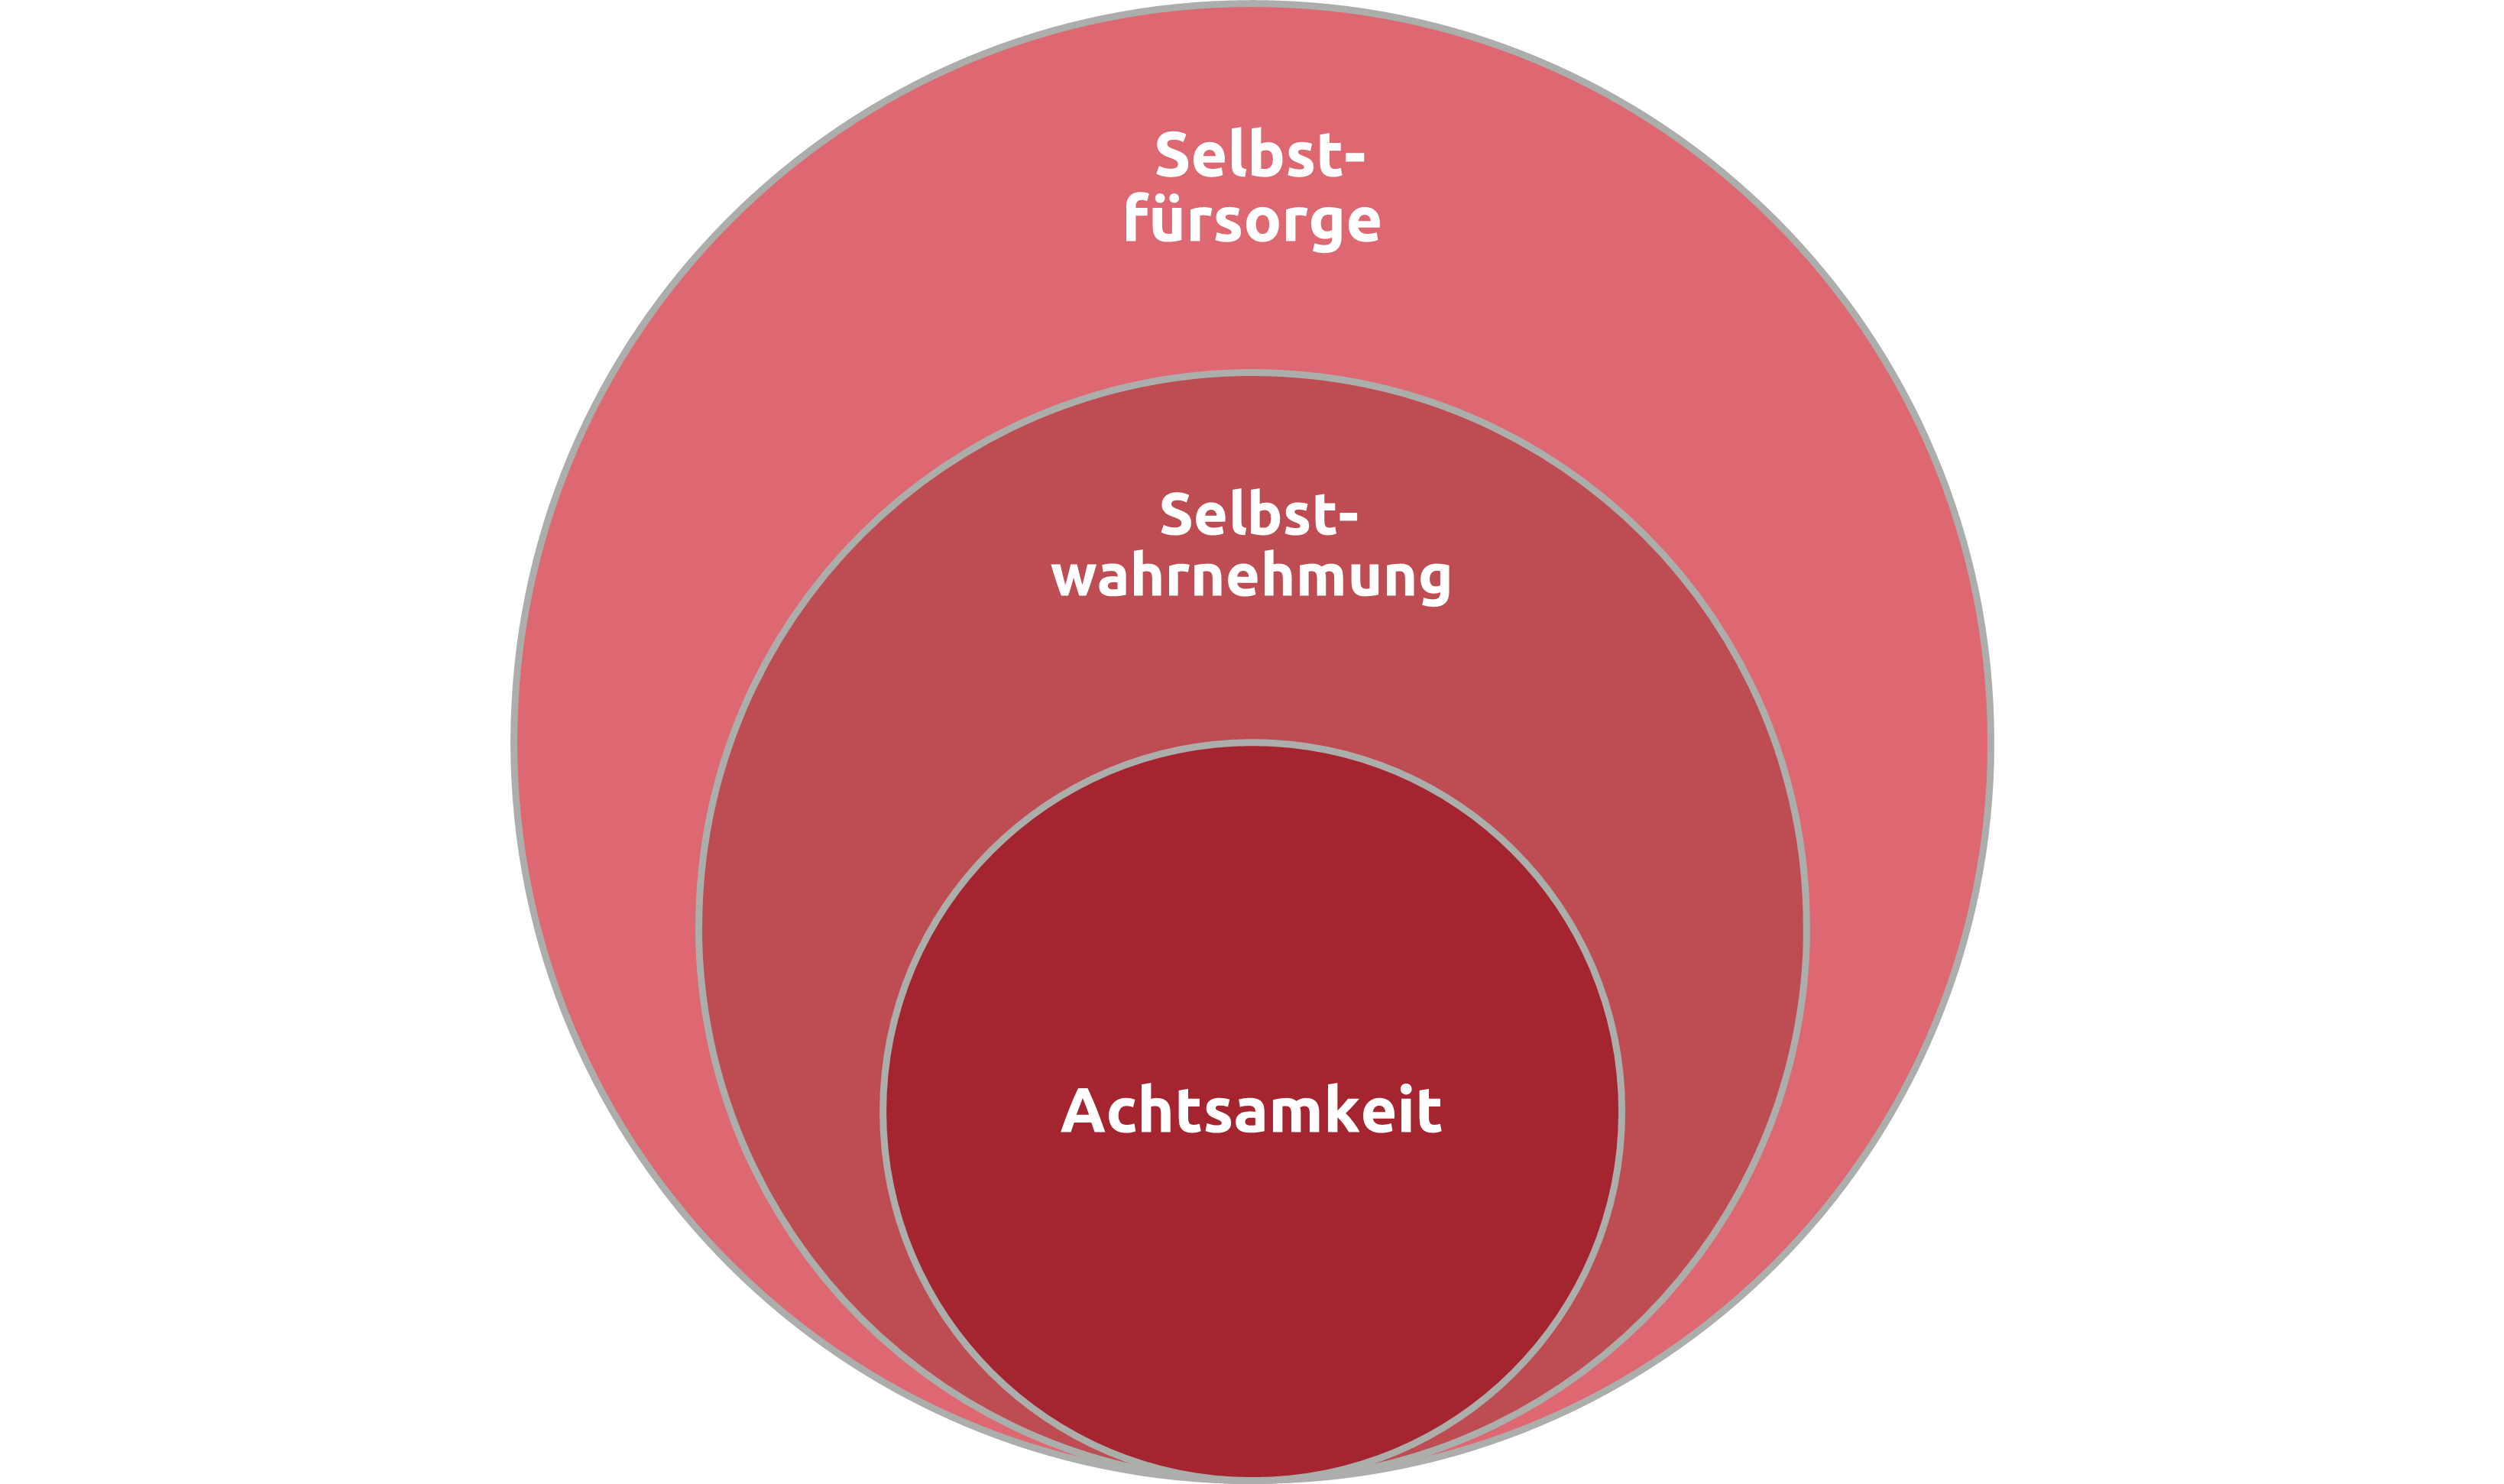 Graphik bestehend aus 3 Kreisen. Im Kern Achtsamkeit, in mittleren Kreis Selbstwahrnehmung und außen Selbstfürsorge.